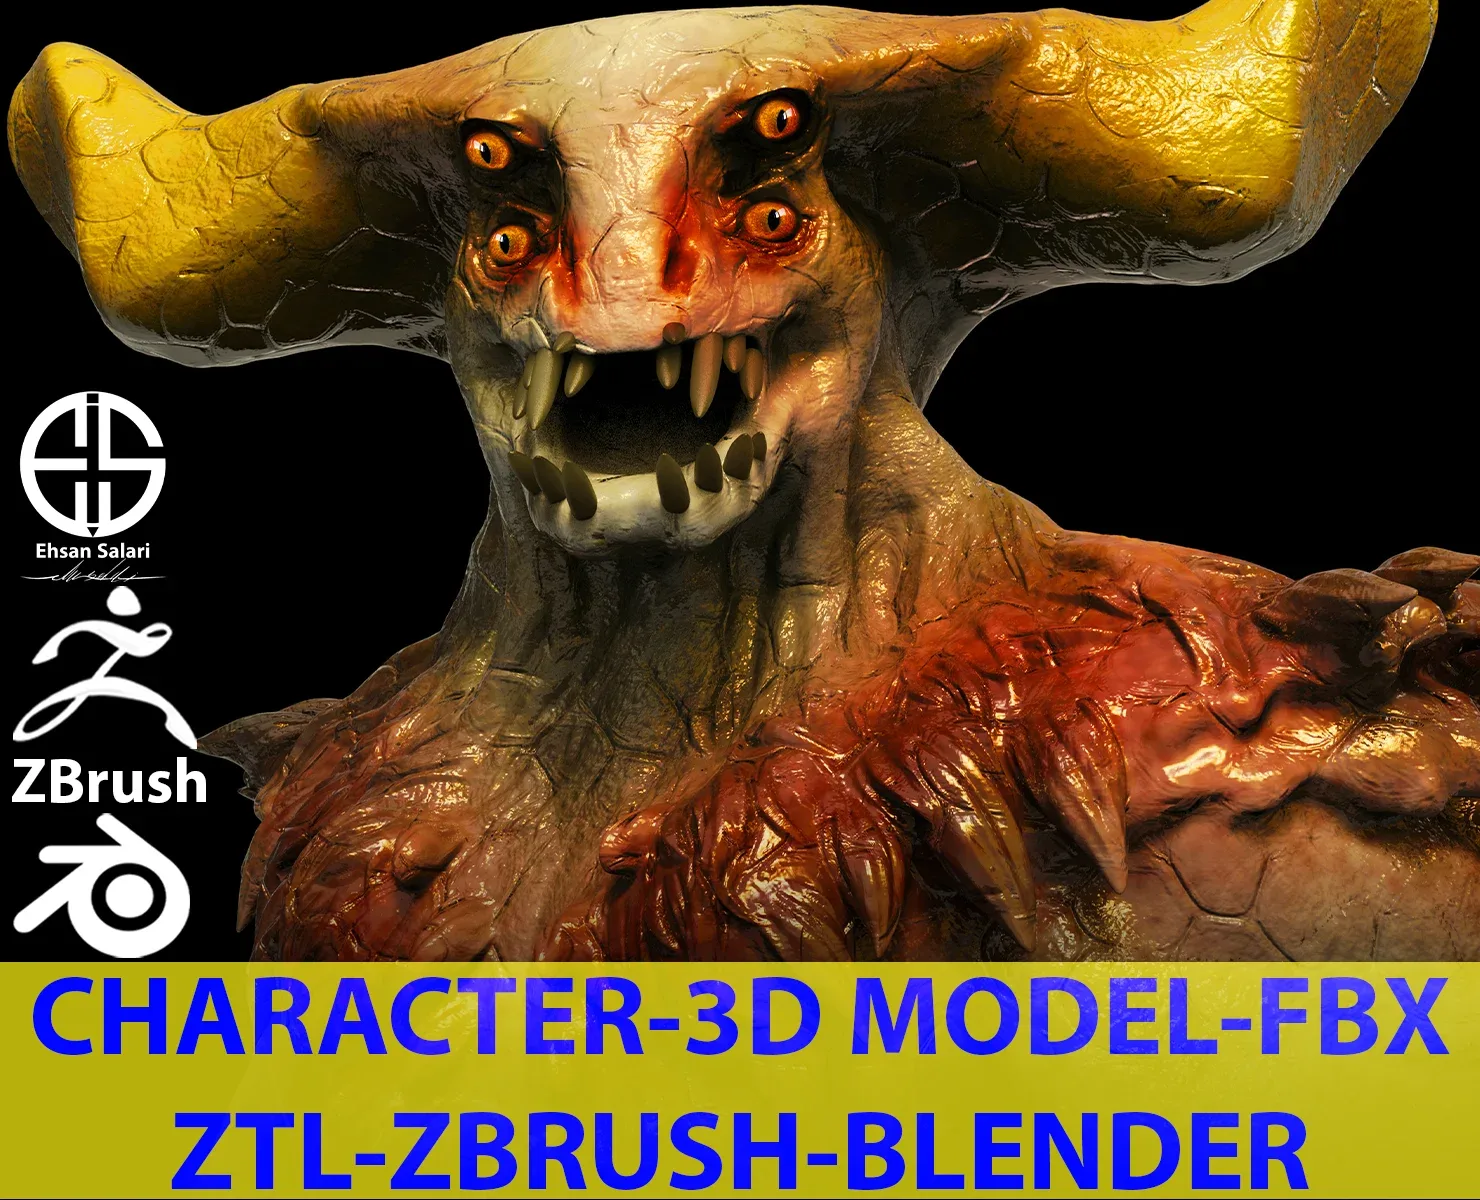 Full 3D character model-Zbrush-Blender [ Film-Game-Animation ]